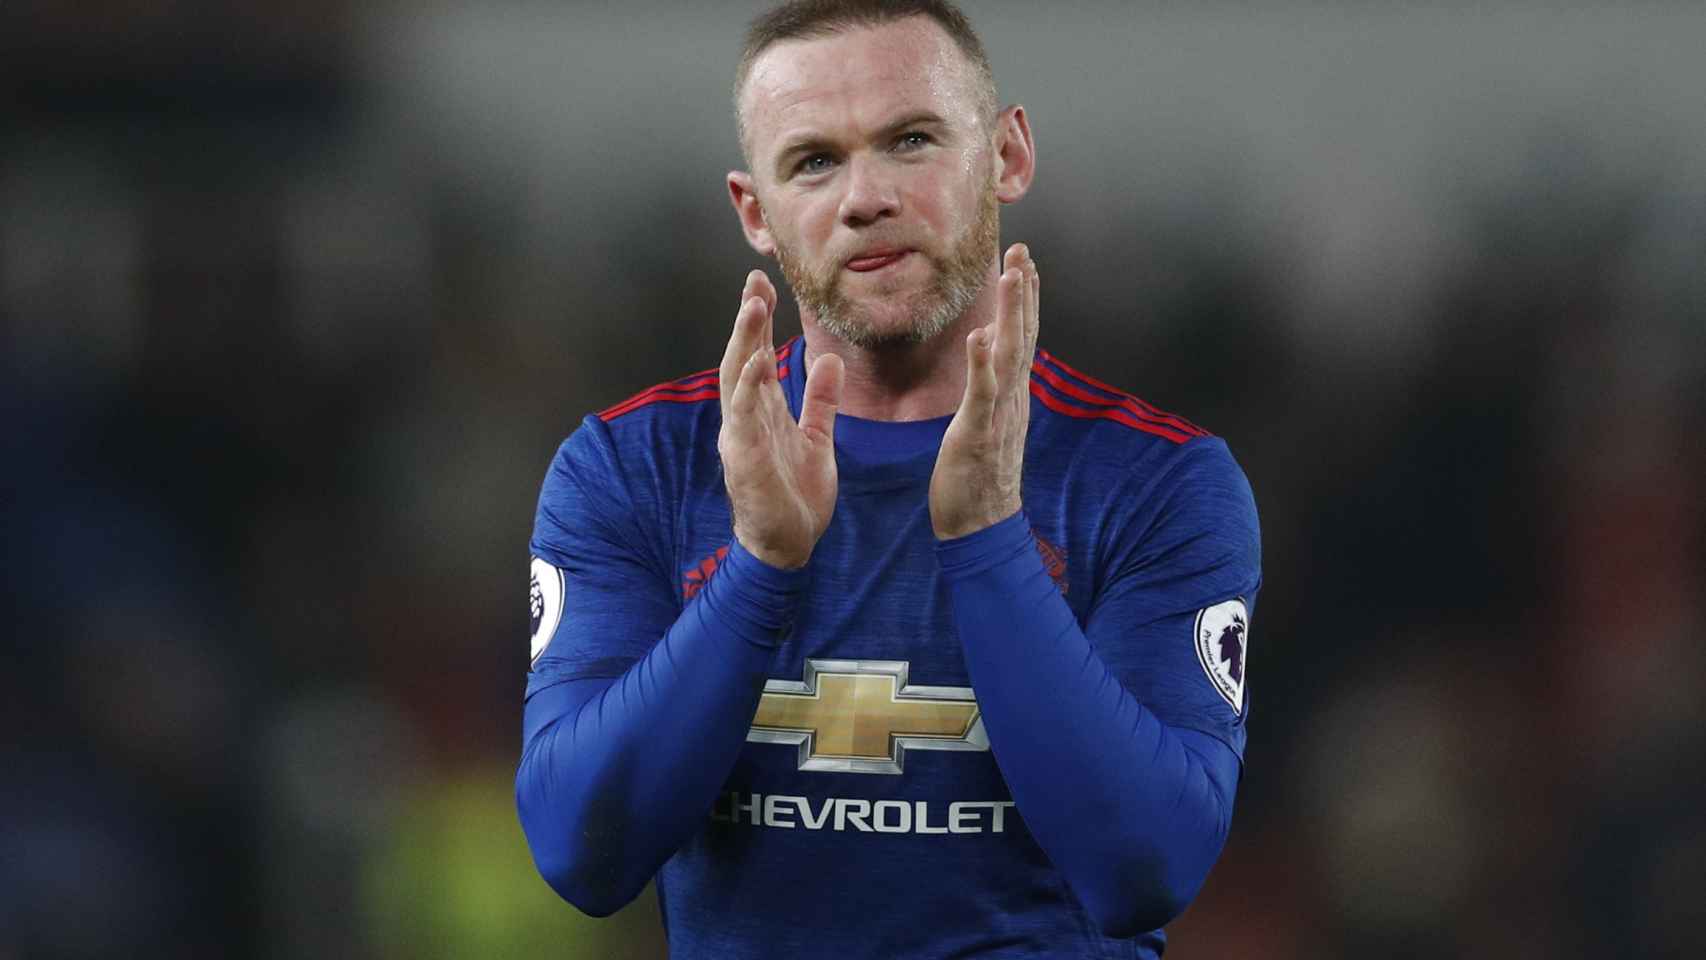 Rooney aplaude tras el partido de su récord.